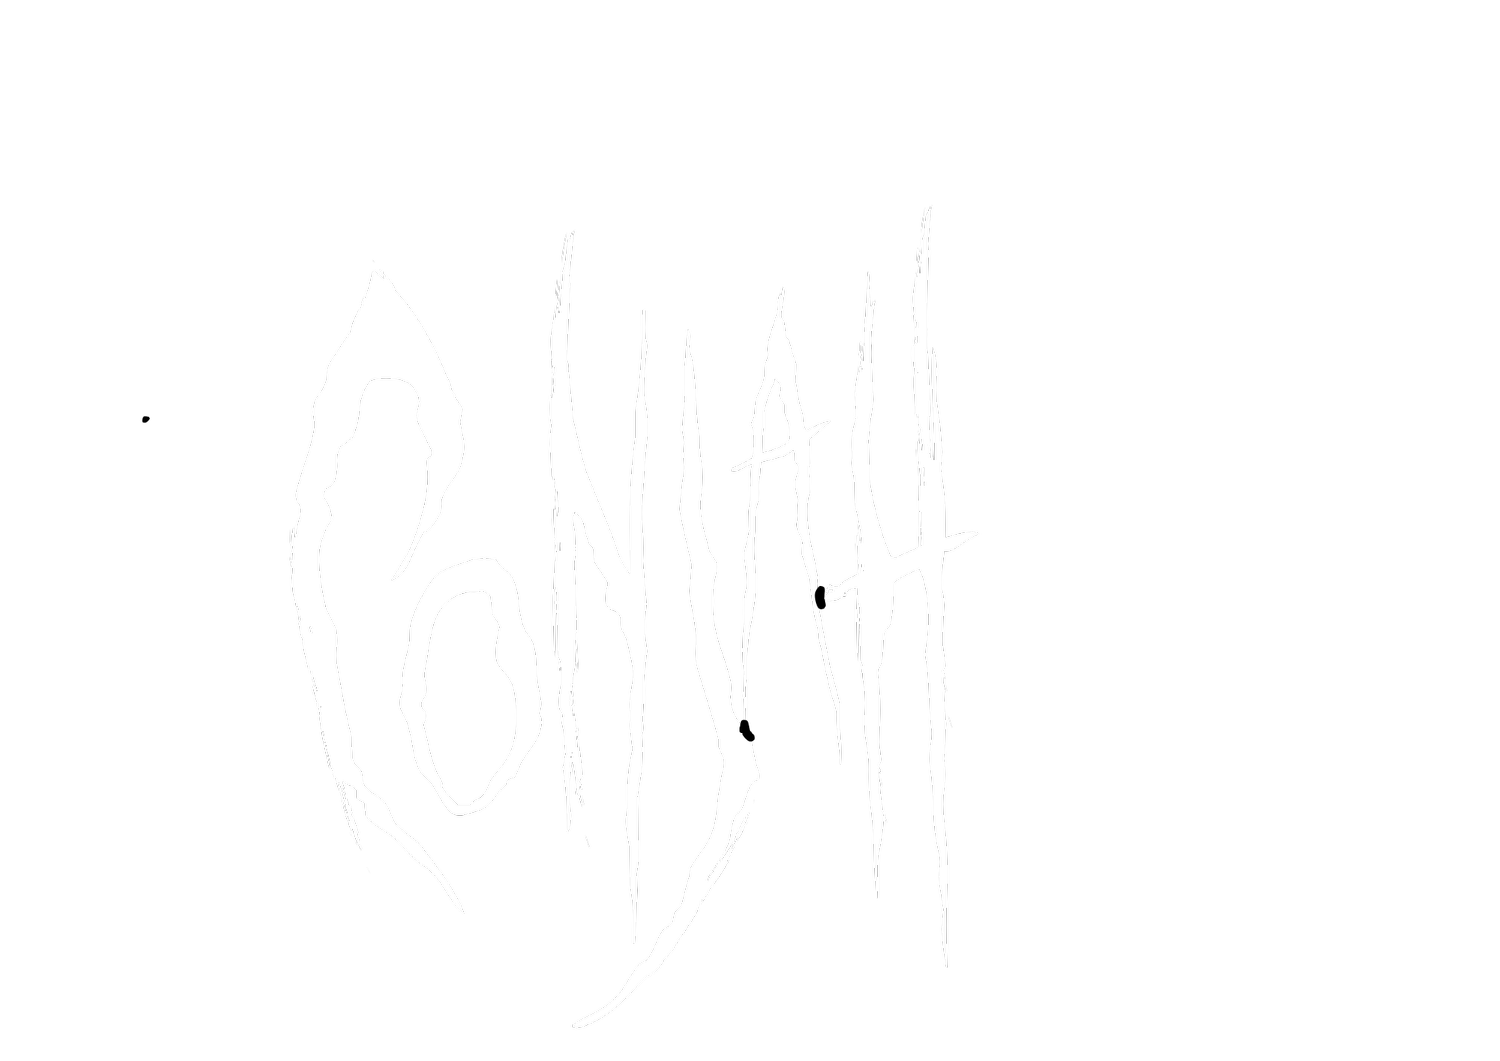 CONJAH